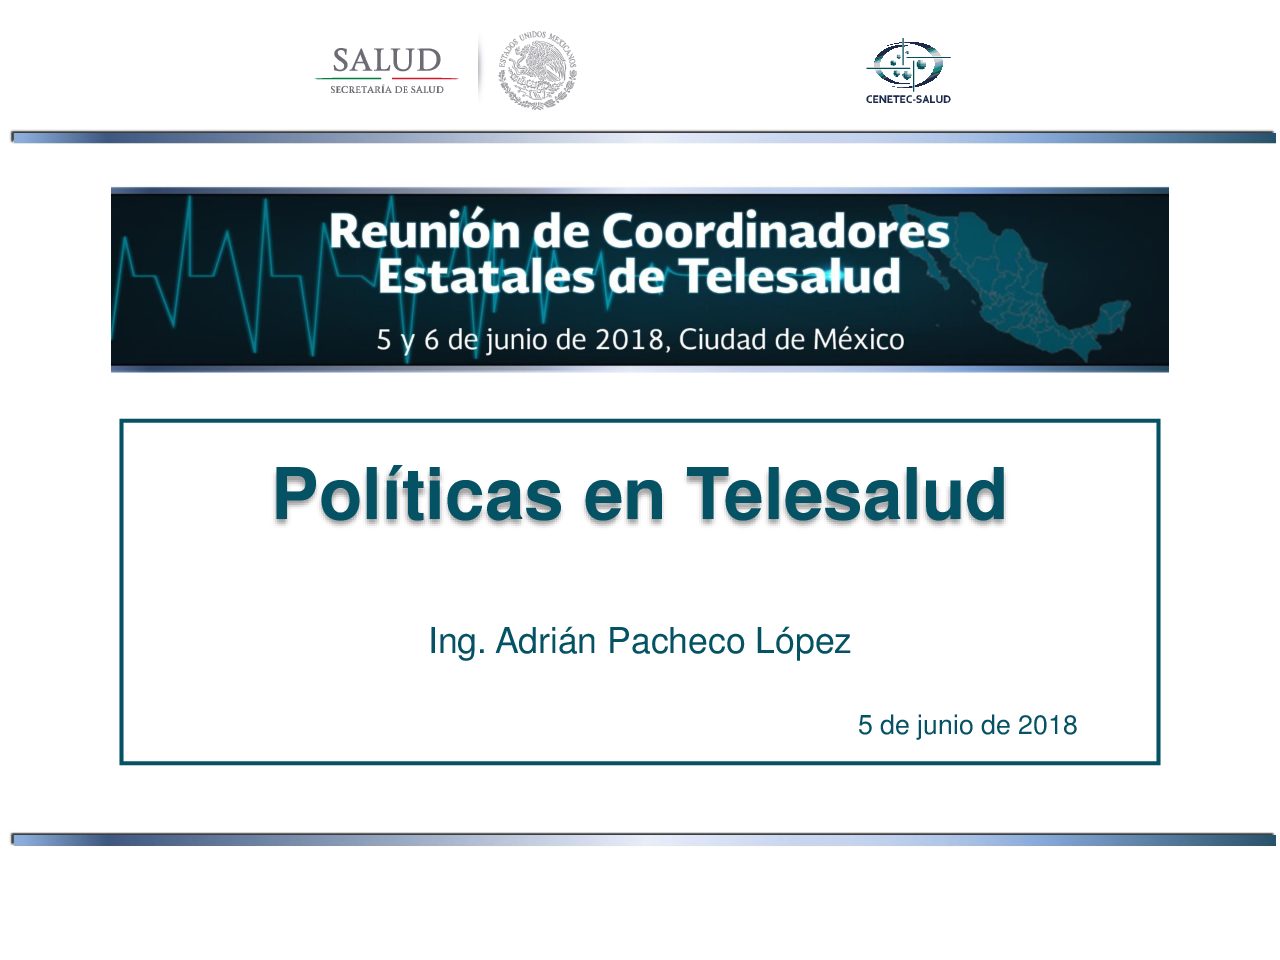 Políticas en Telesalud, Reunión de coordinadores estatales de telesalud, 5 y 6 de junio 2018, CDMX